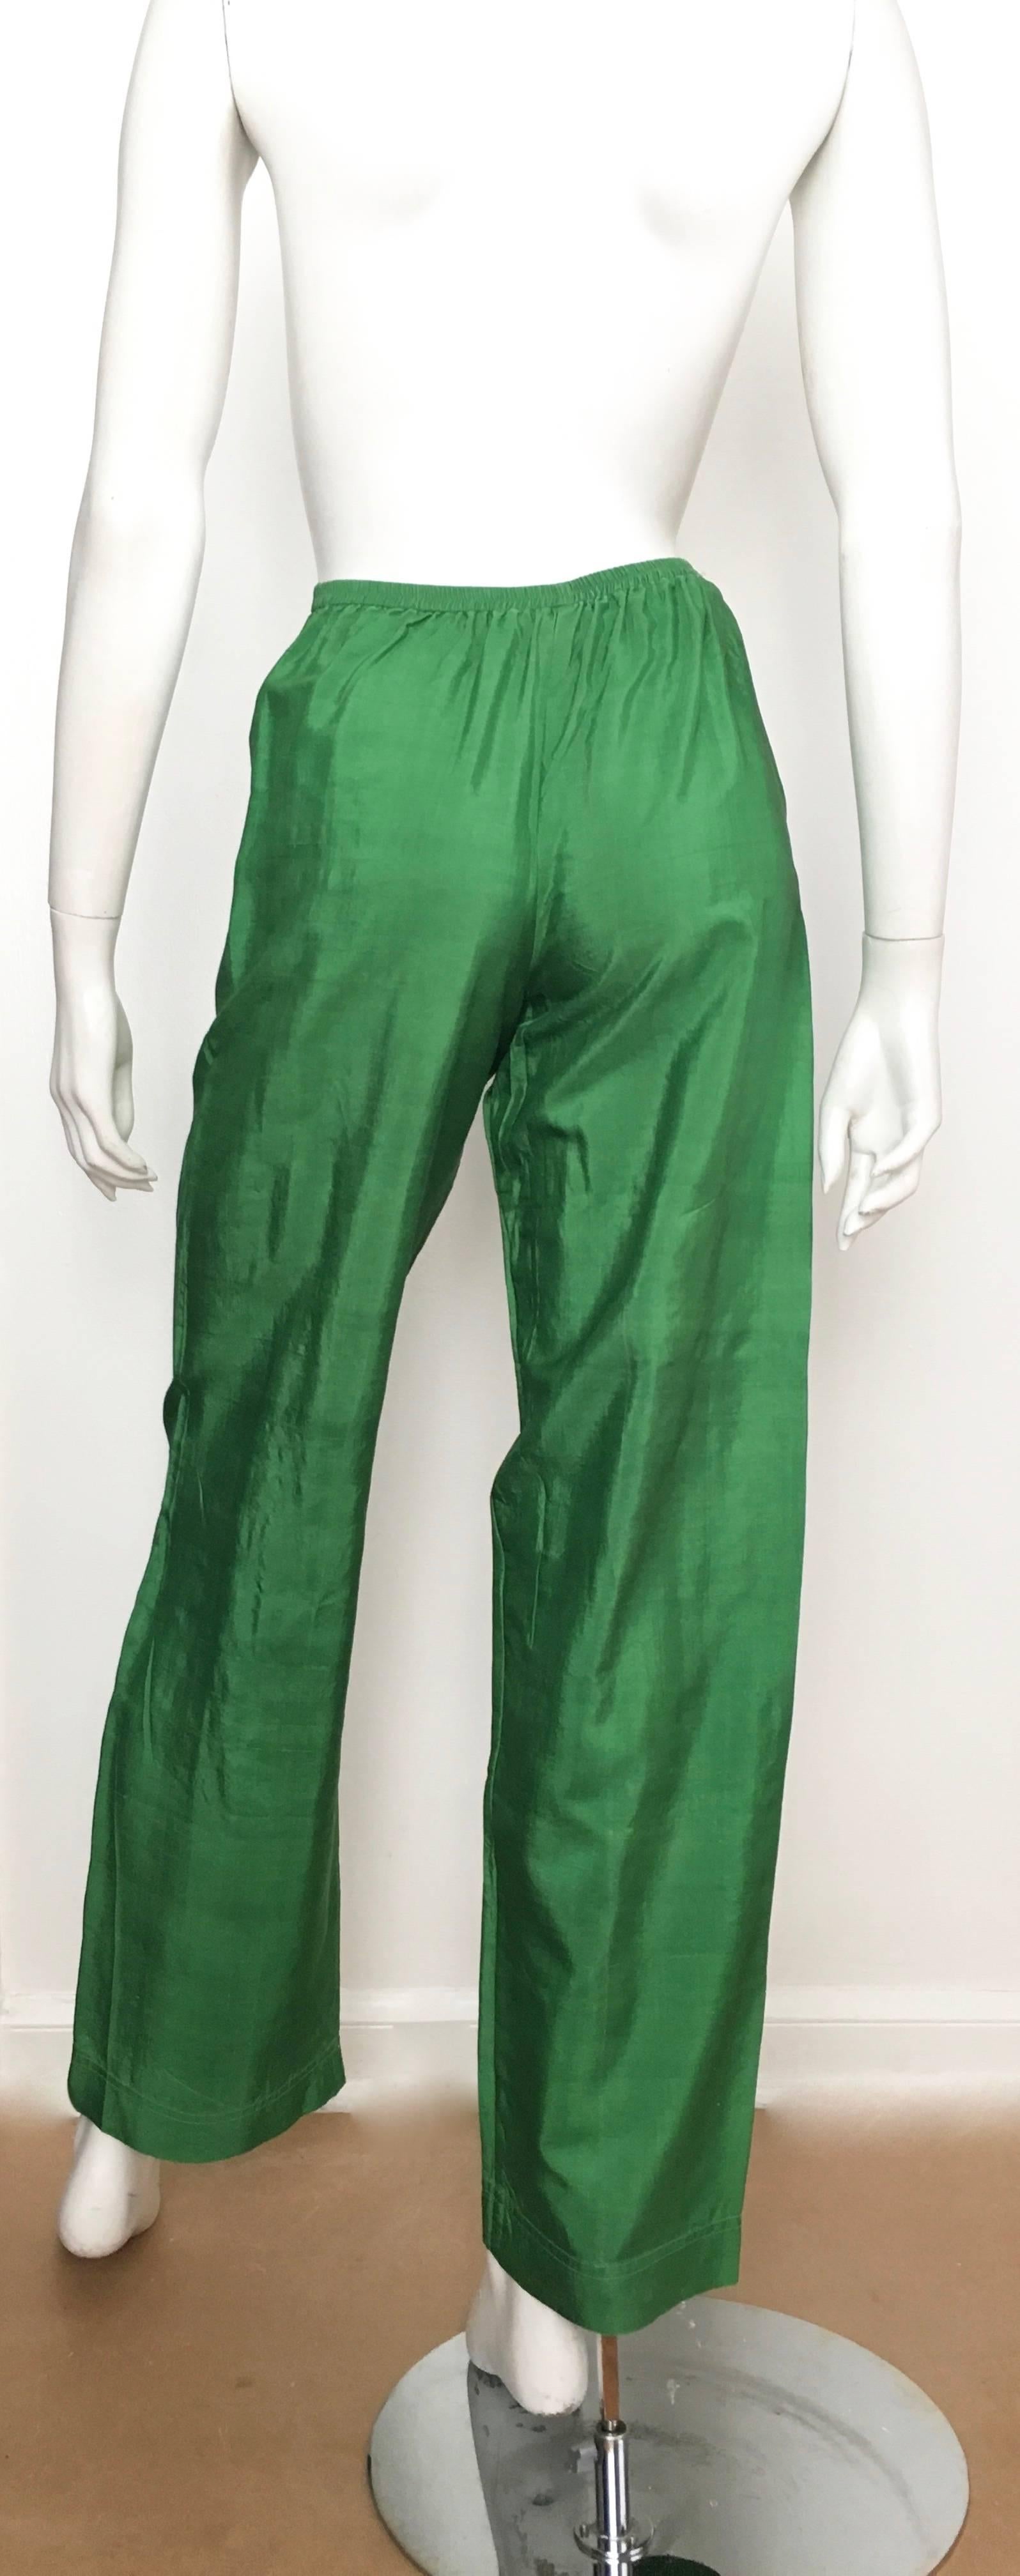 Saint Laurent Rive Gauche 1970s Green Silk Pants Size 4. 1